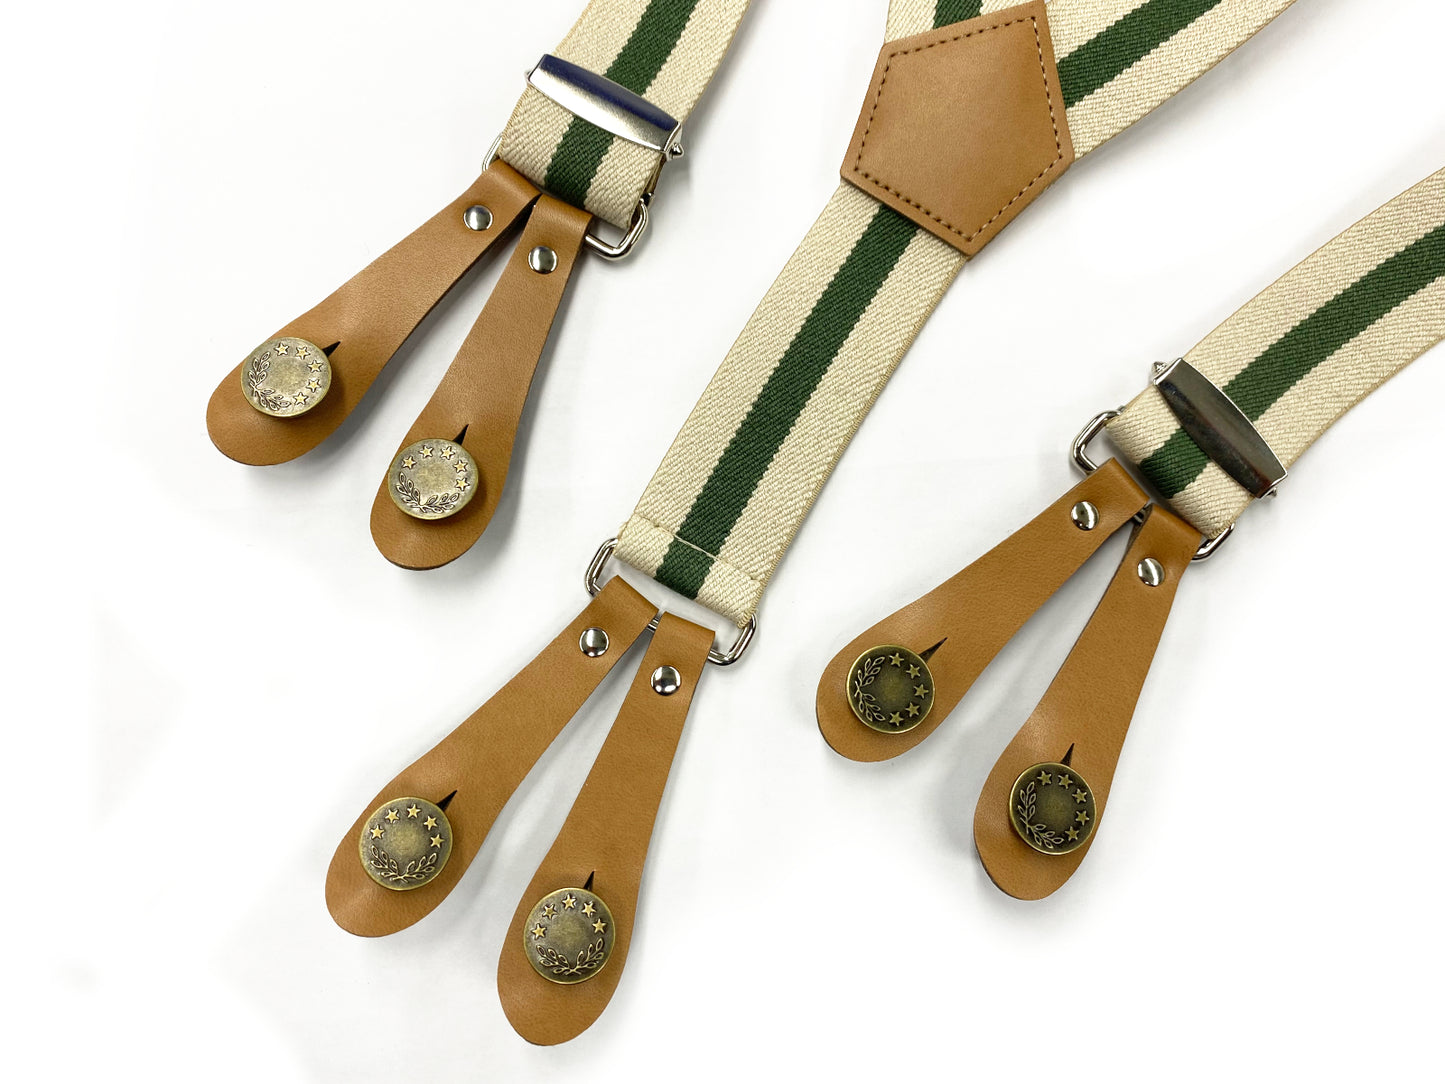 ハッサム・トーメル　ー無縫製で取り付けられるクリップ付きボタンー